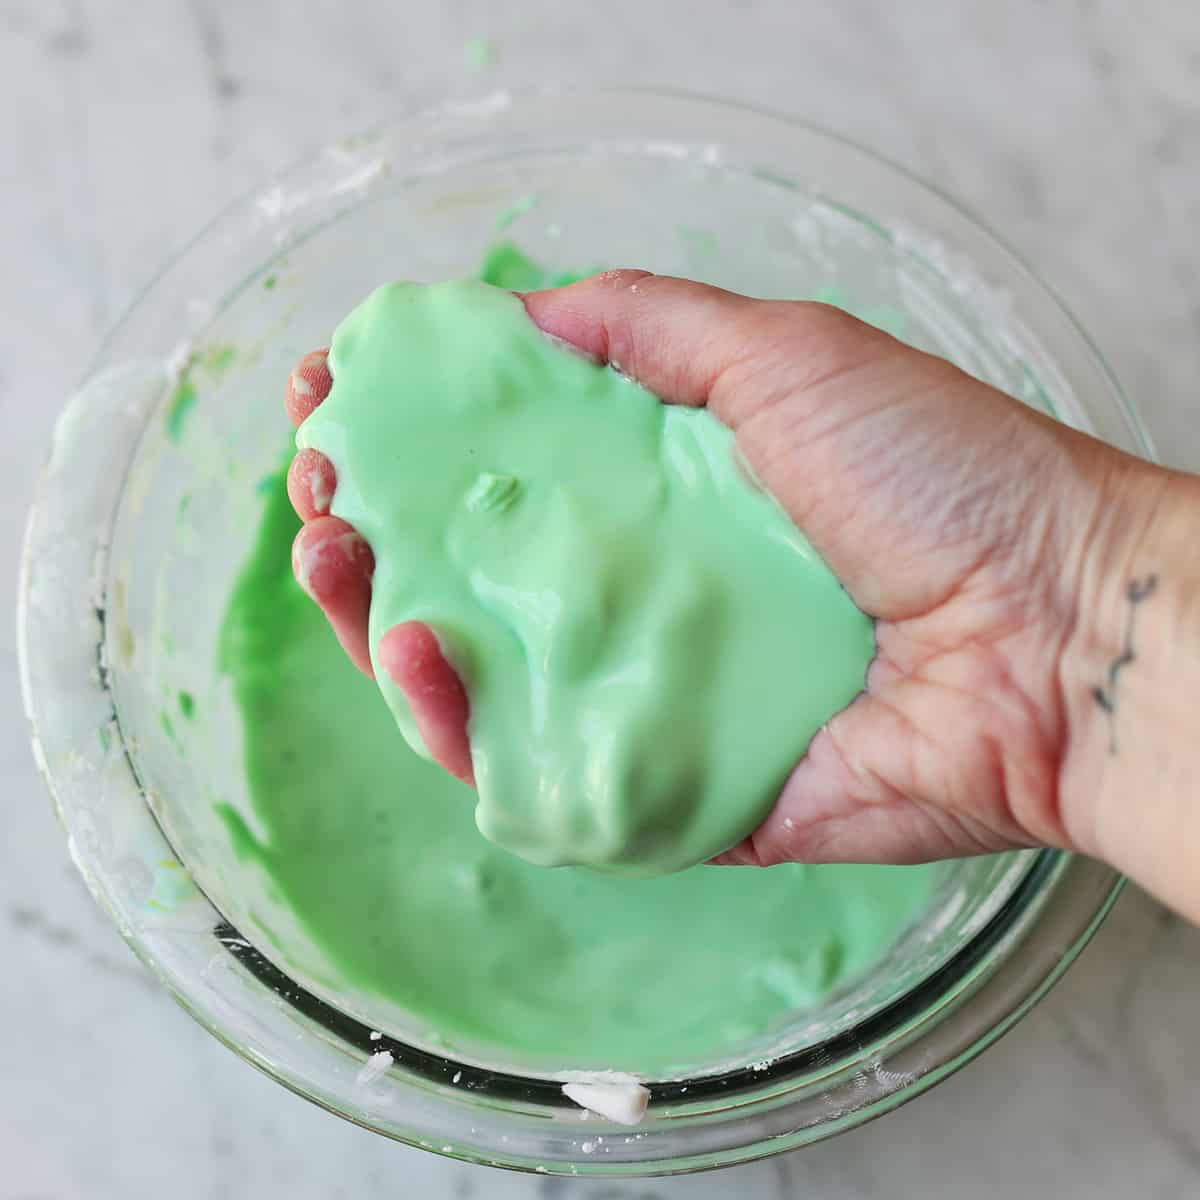 Hand holding green oobleck goop mixture. 